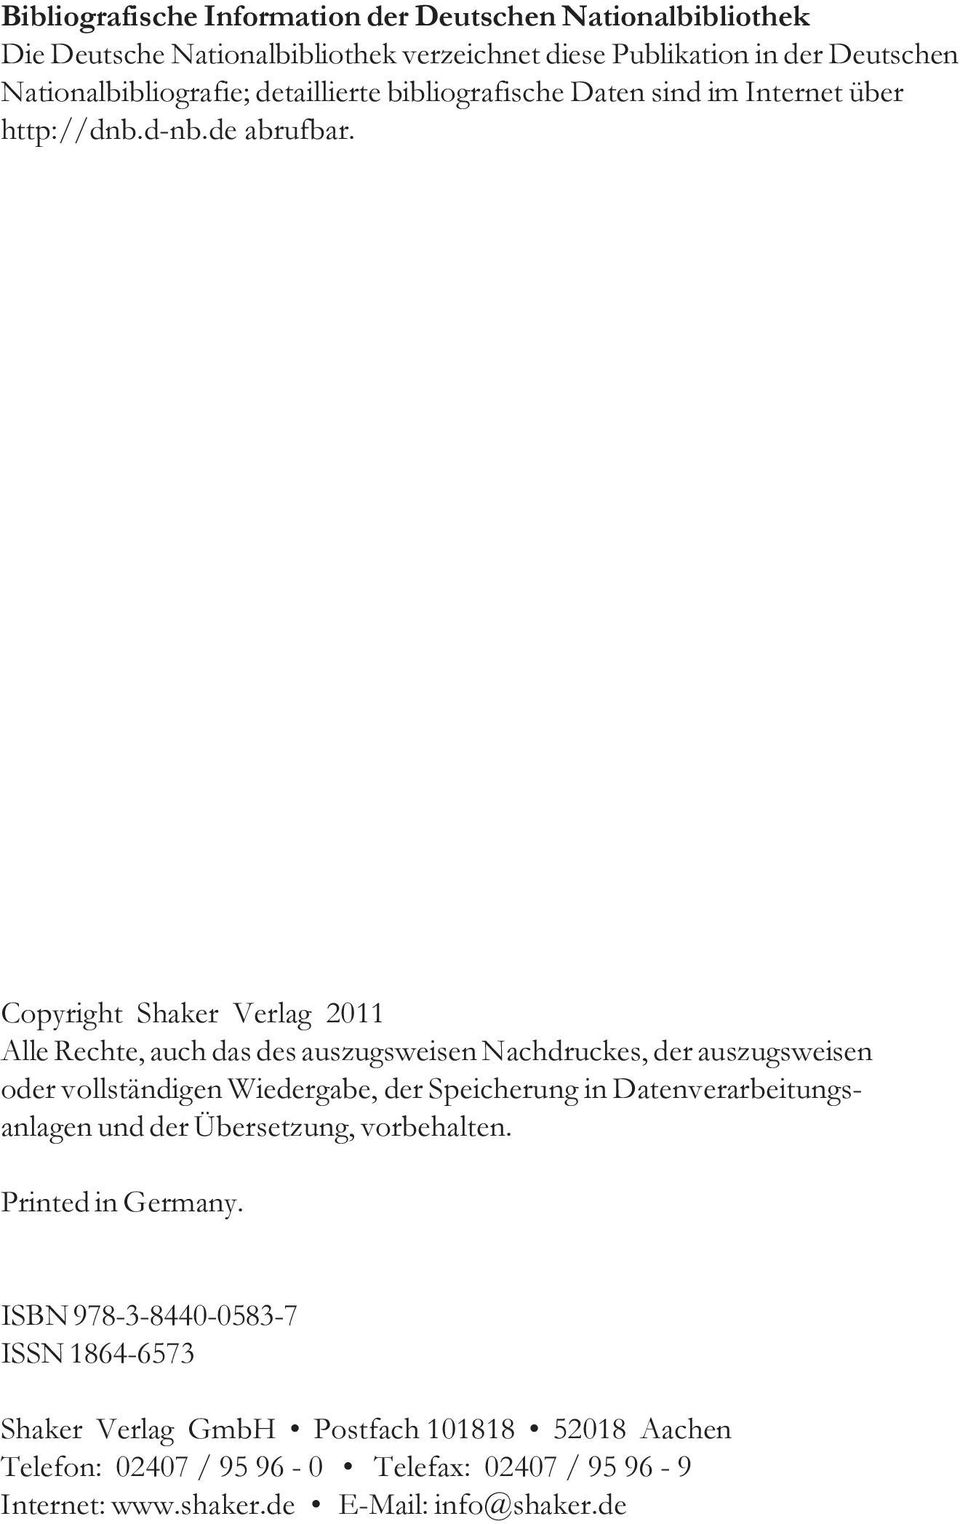 Copyright Shaker Verlag 2011 Alle Rechte, auch das des auszugsweisen Nachdruckes, der auszugsweisen oder vollständigen Wiedergabe, der Speicherung in